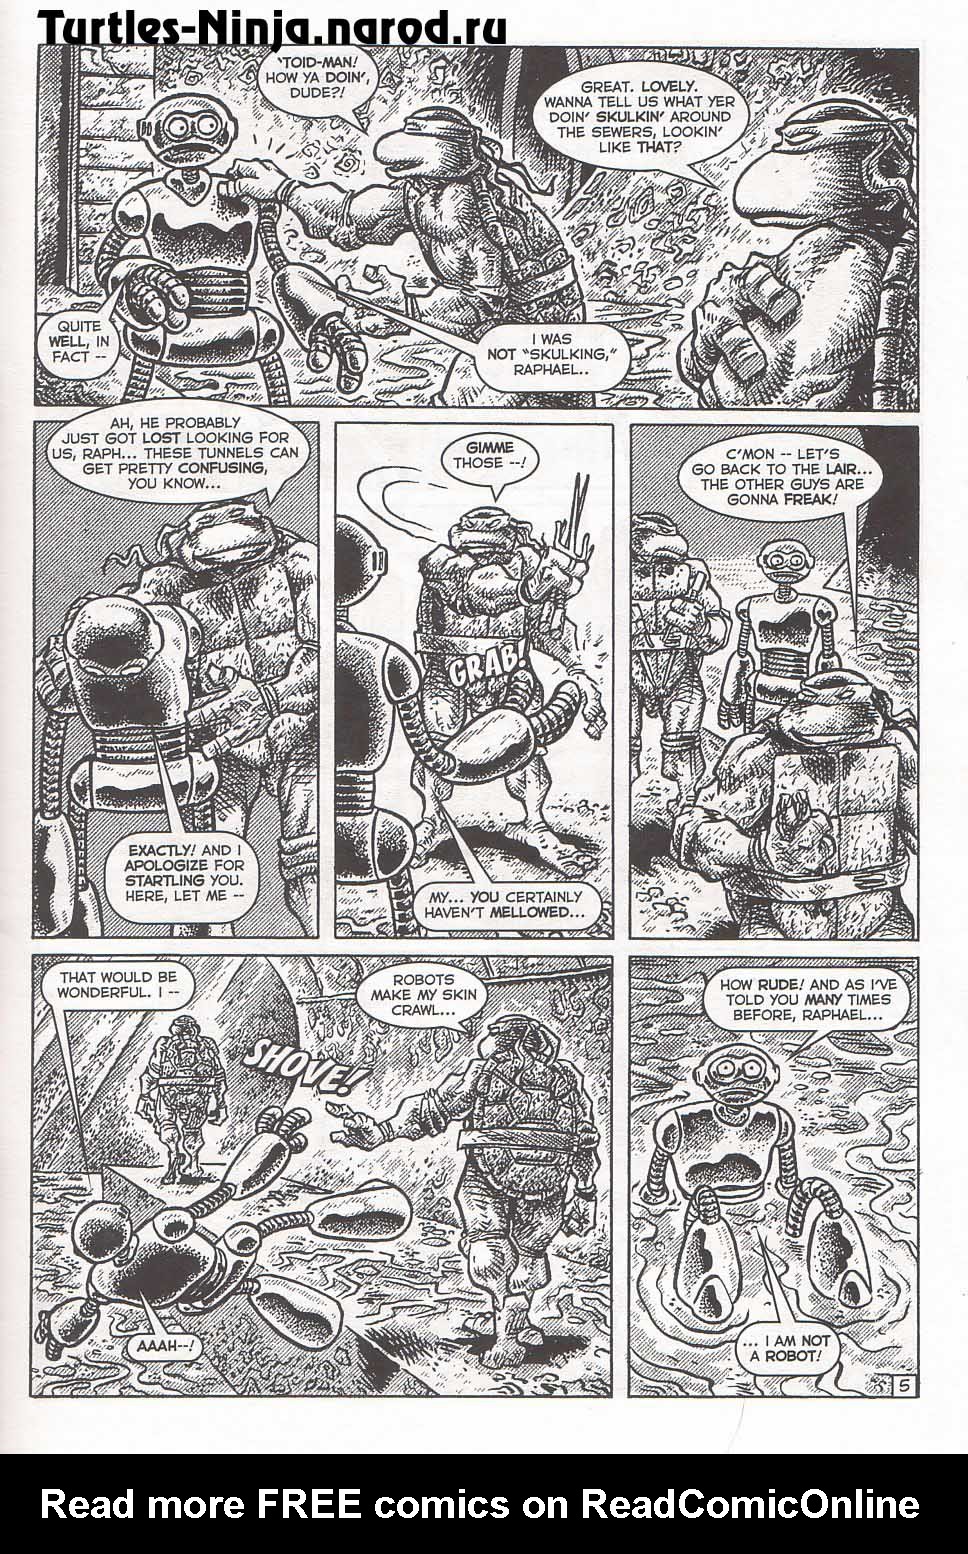 Read online TMNT: Teenage Mutant Ninja Turtles comic -  Issue #5 - 7